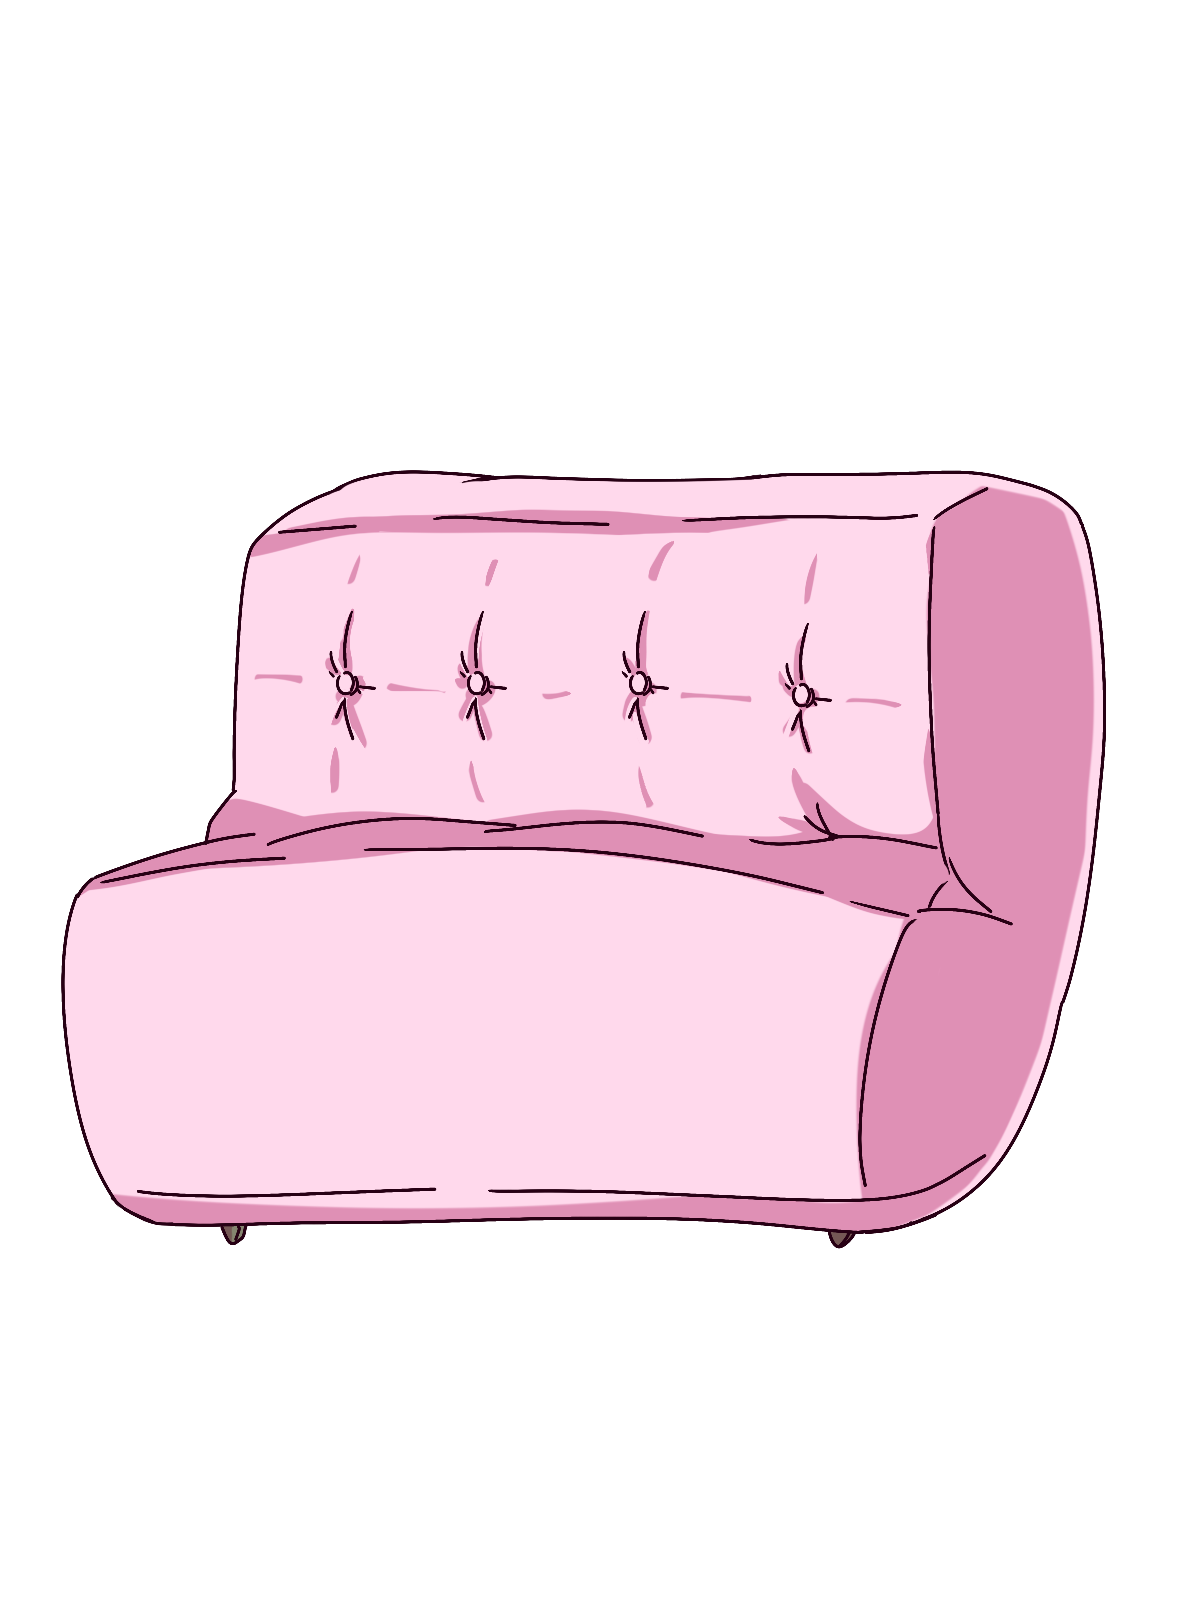 ピンク色のソファのイラスト